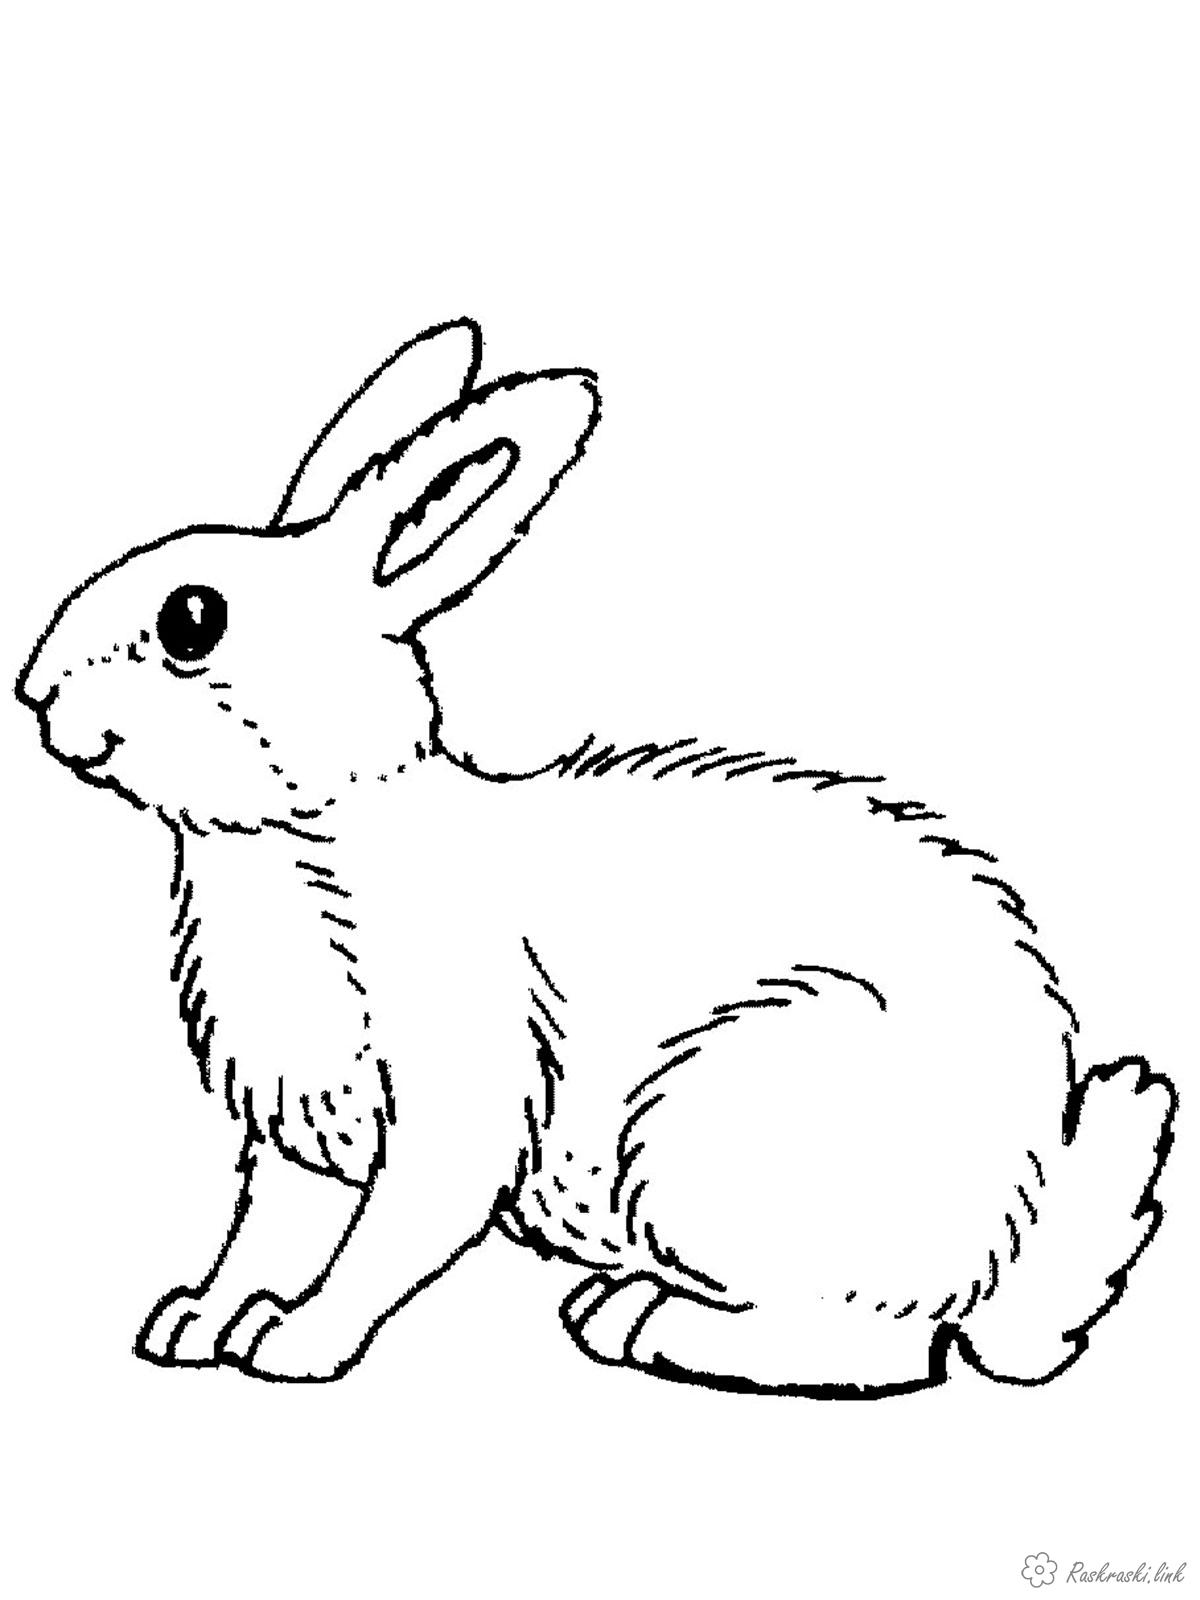 Розмальовки дітей розмальовки, дикі тварини, звірі, для дітей, зайці